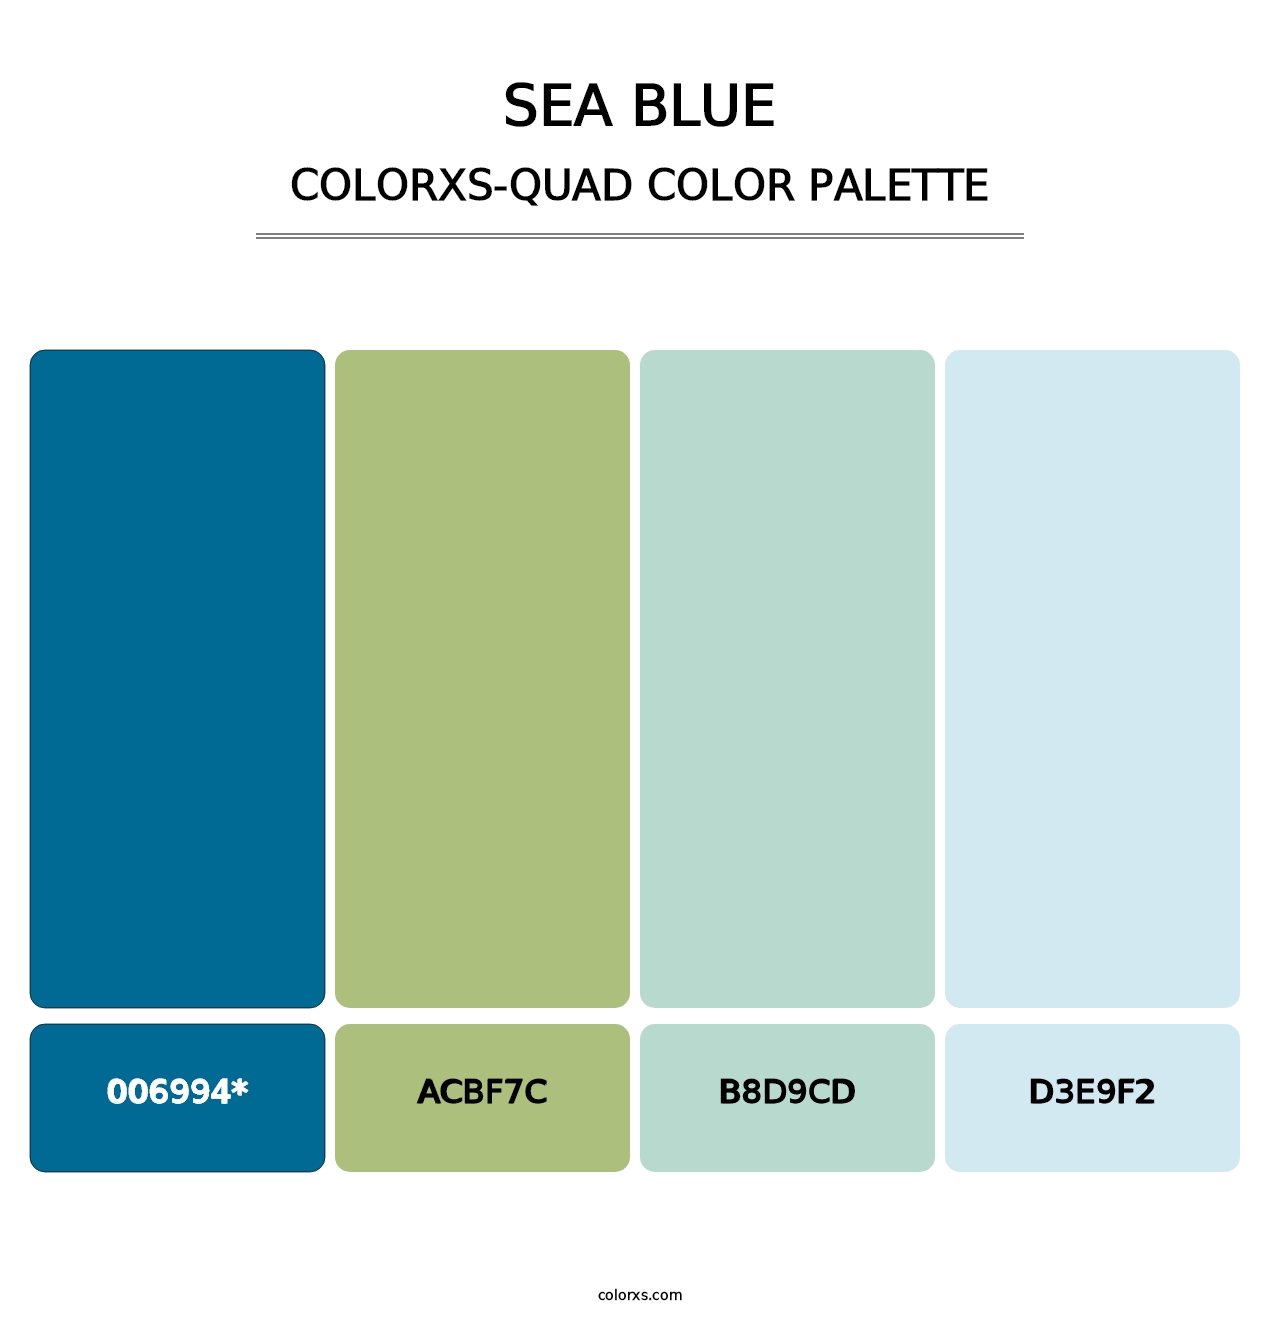 Sea Blue - Colorxs Quad Palette